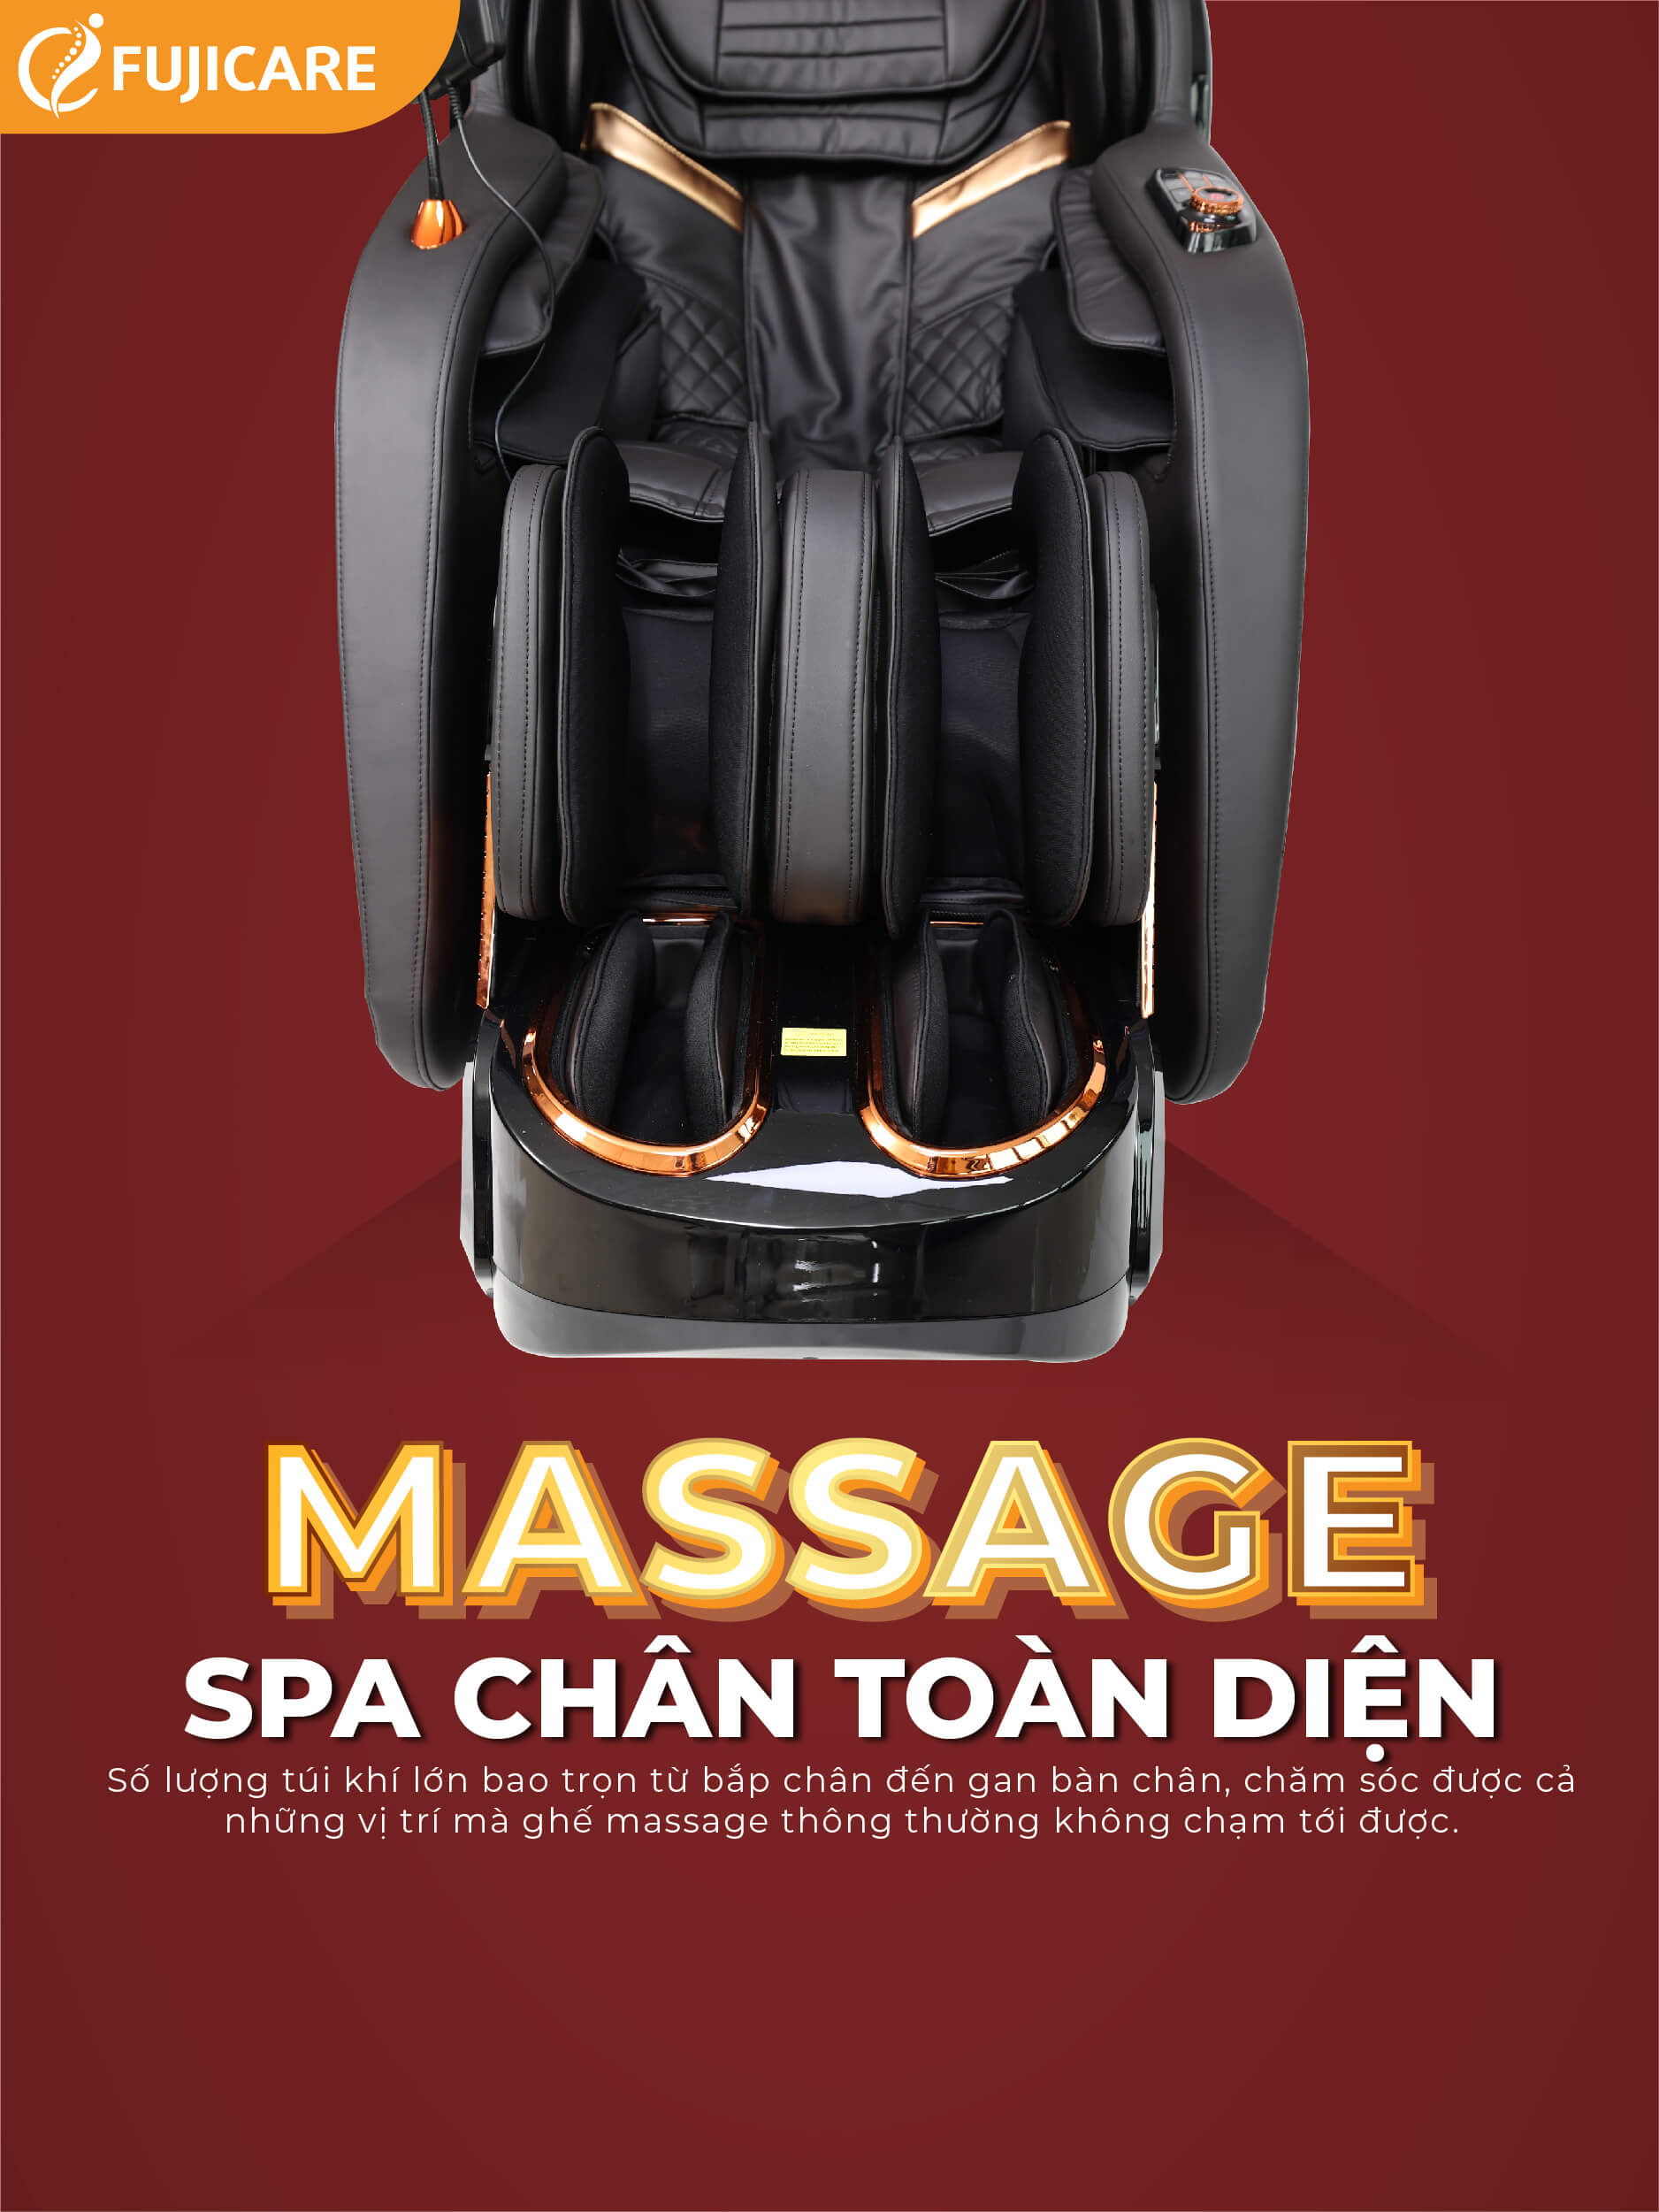 FC-688 massage spa chân toàn diện